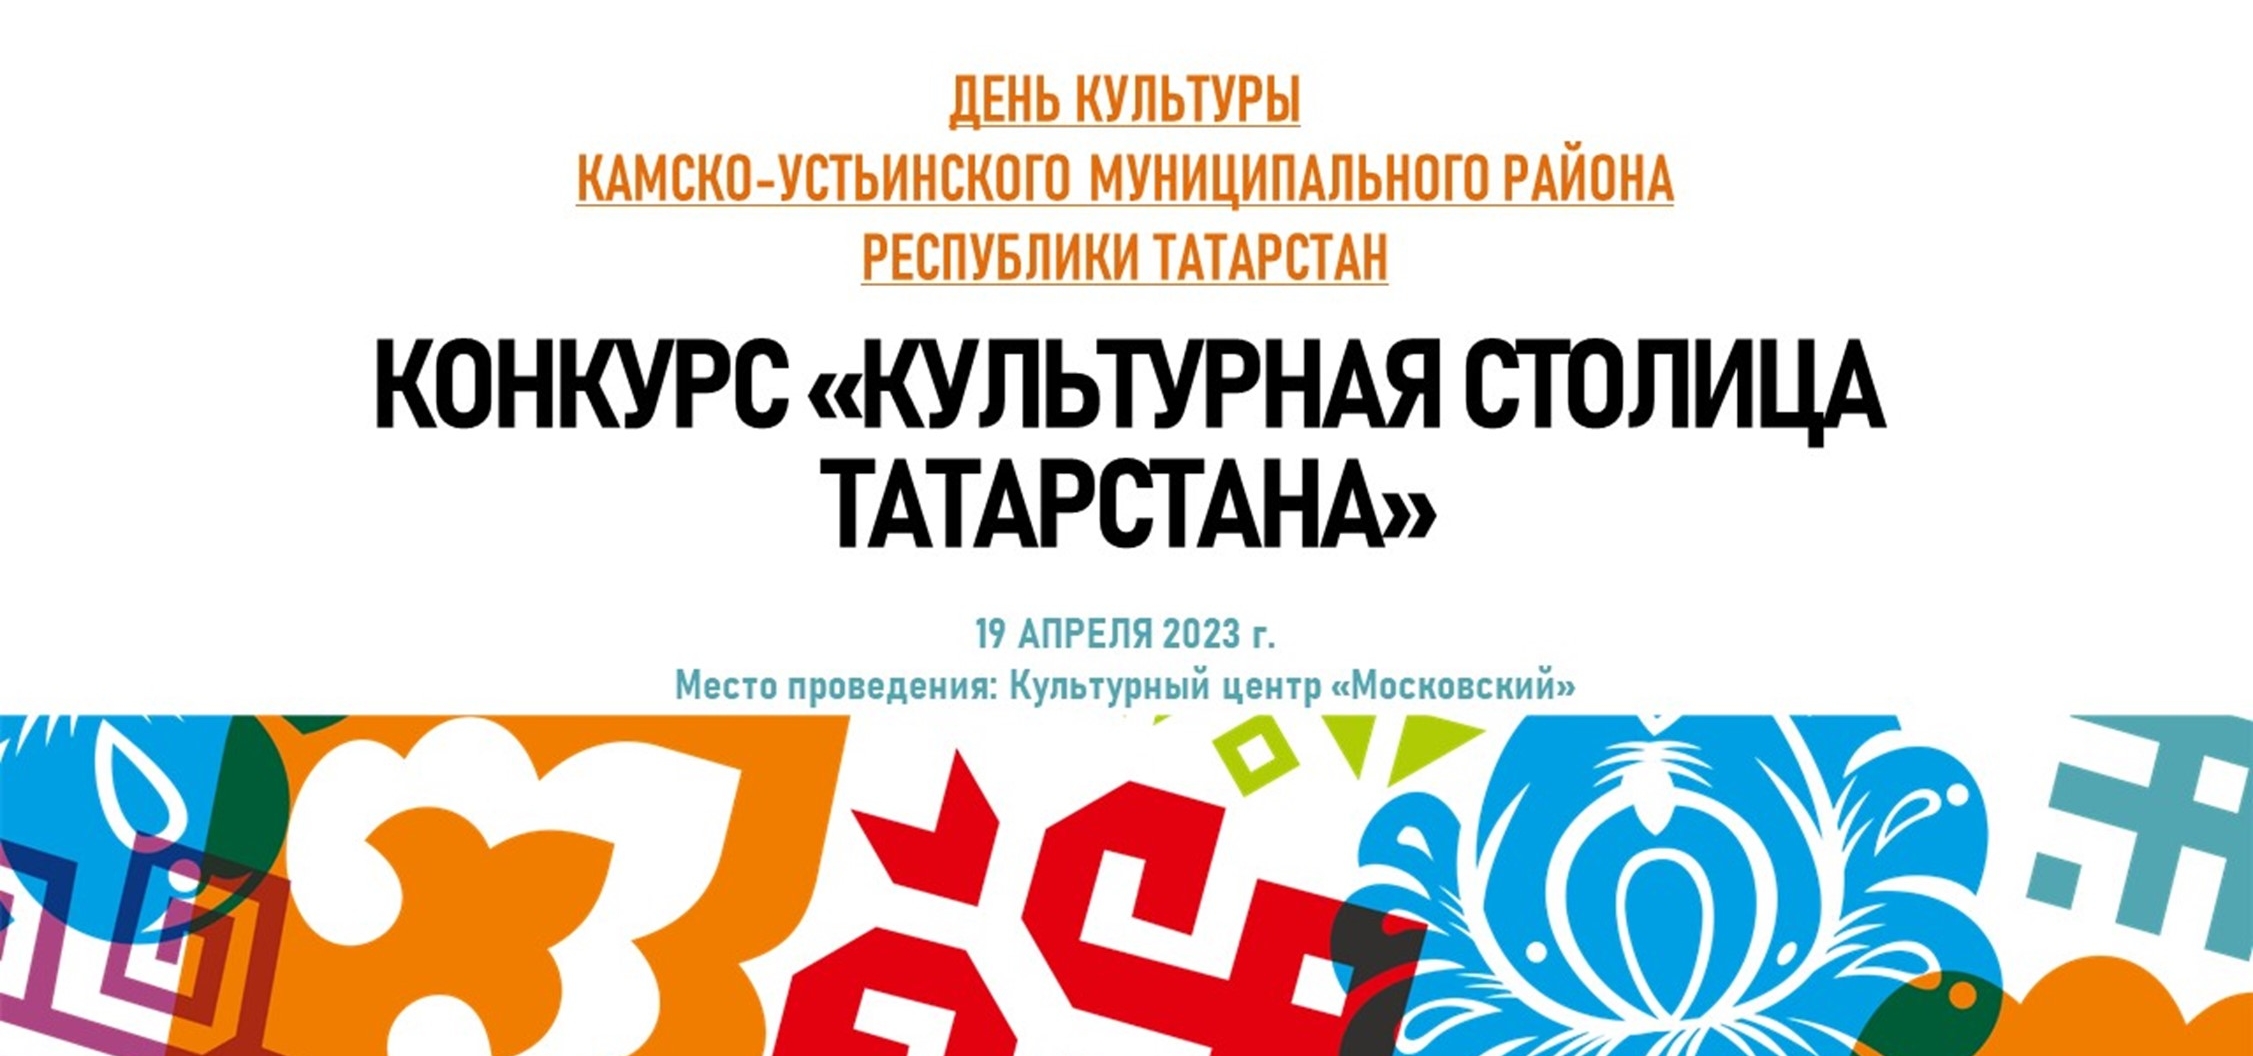 Камско-Устьинский район приглашает на свою культурную программу 19 апреля